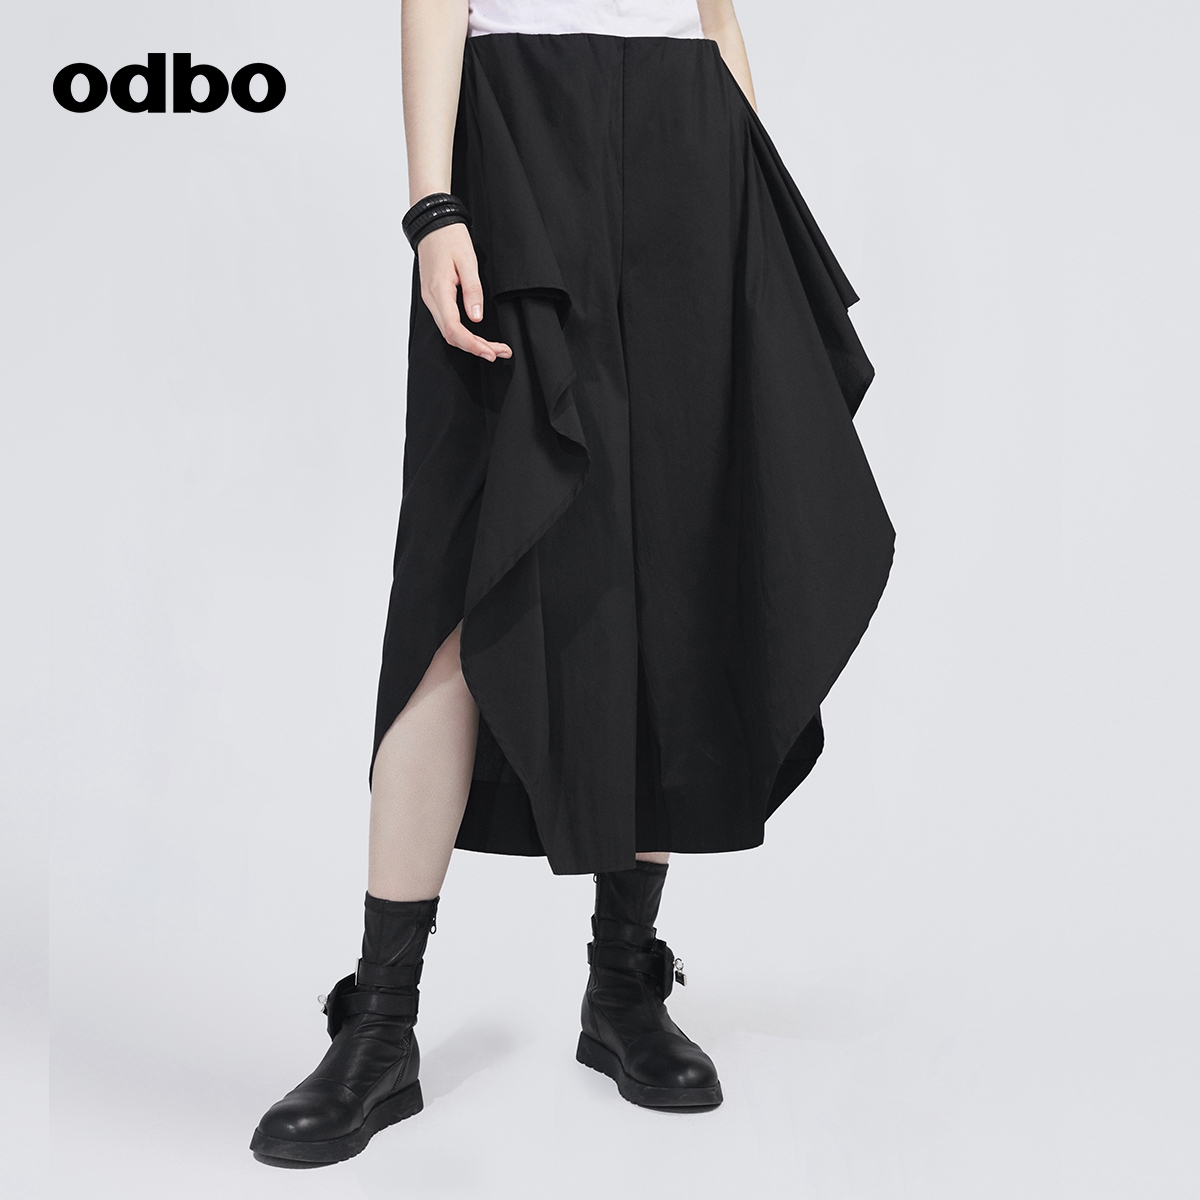 女秋装 新款 休闲裙裤 欧迪比欧原创设计黑色不对称阔腿裤 odbo